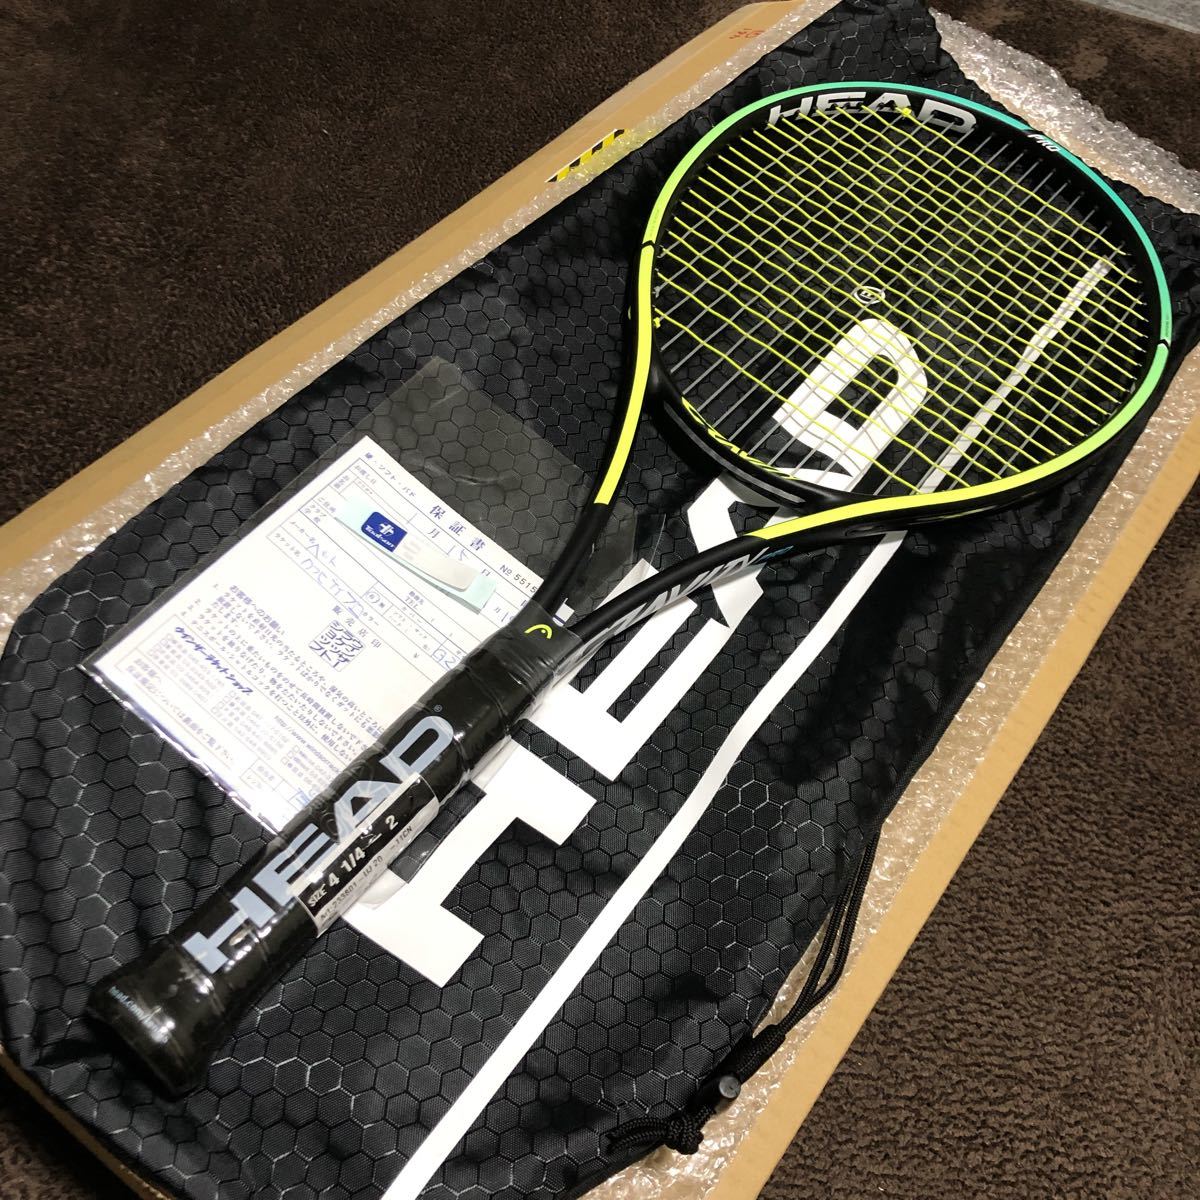 市販 Natural storeヘッド HEAD 硬式テニス ラケット GRAVITY PRO 2021 フレームのみ G2 233801 